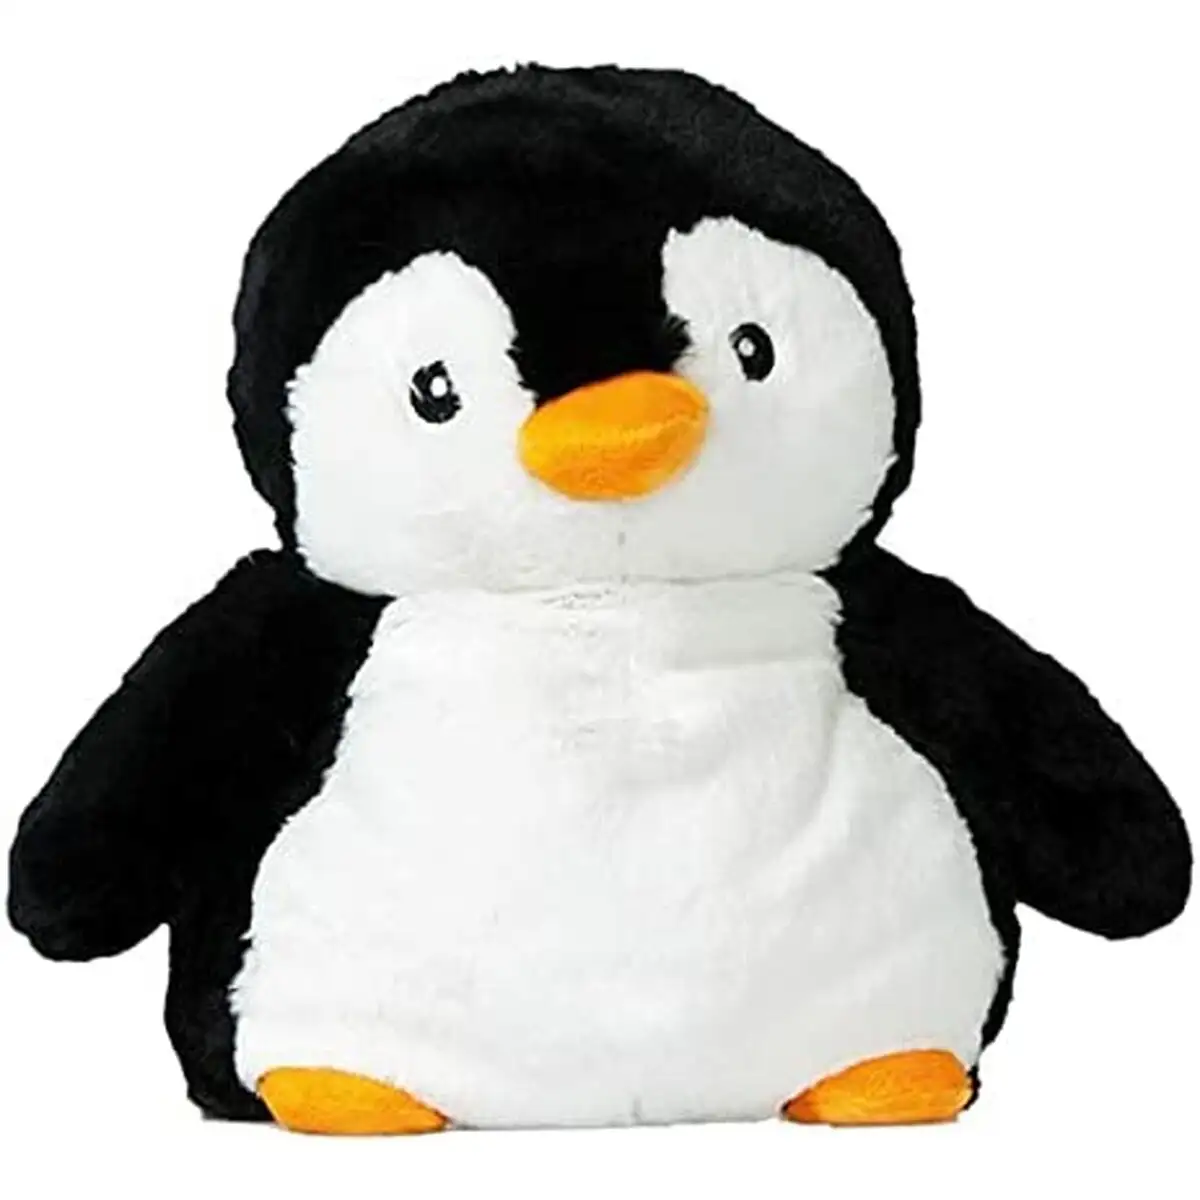 Jouet peluche pingouin noir reconditionne a _6119. DIAYTAR SENEGAL - Votre Portail vers l'Extraordinaire. Parcourez nos collections et découvrez des produits qui vous emmènent au-delà de l'ordinaire, créant une expérience de shopping mémorable.